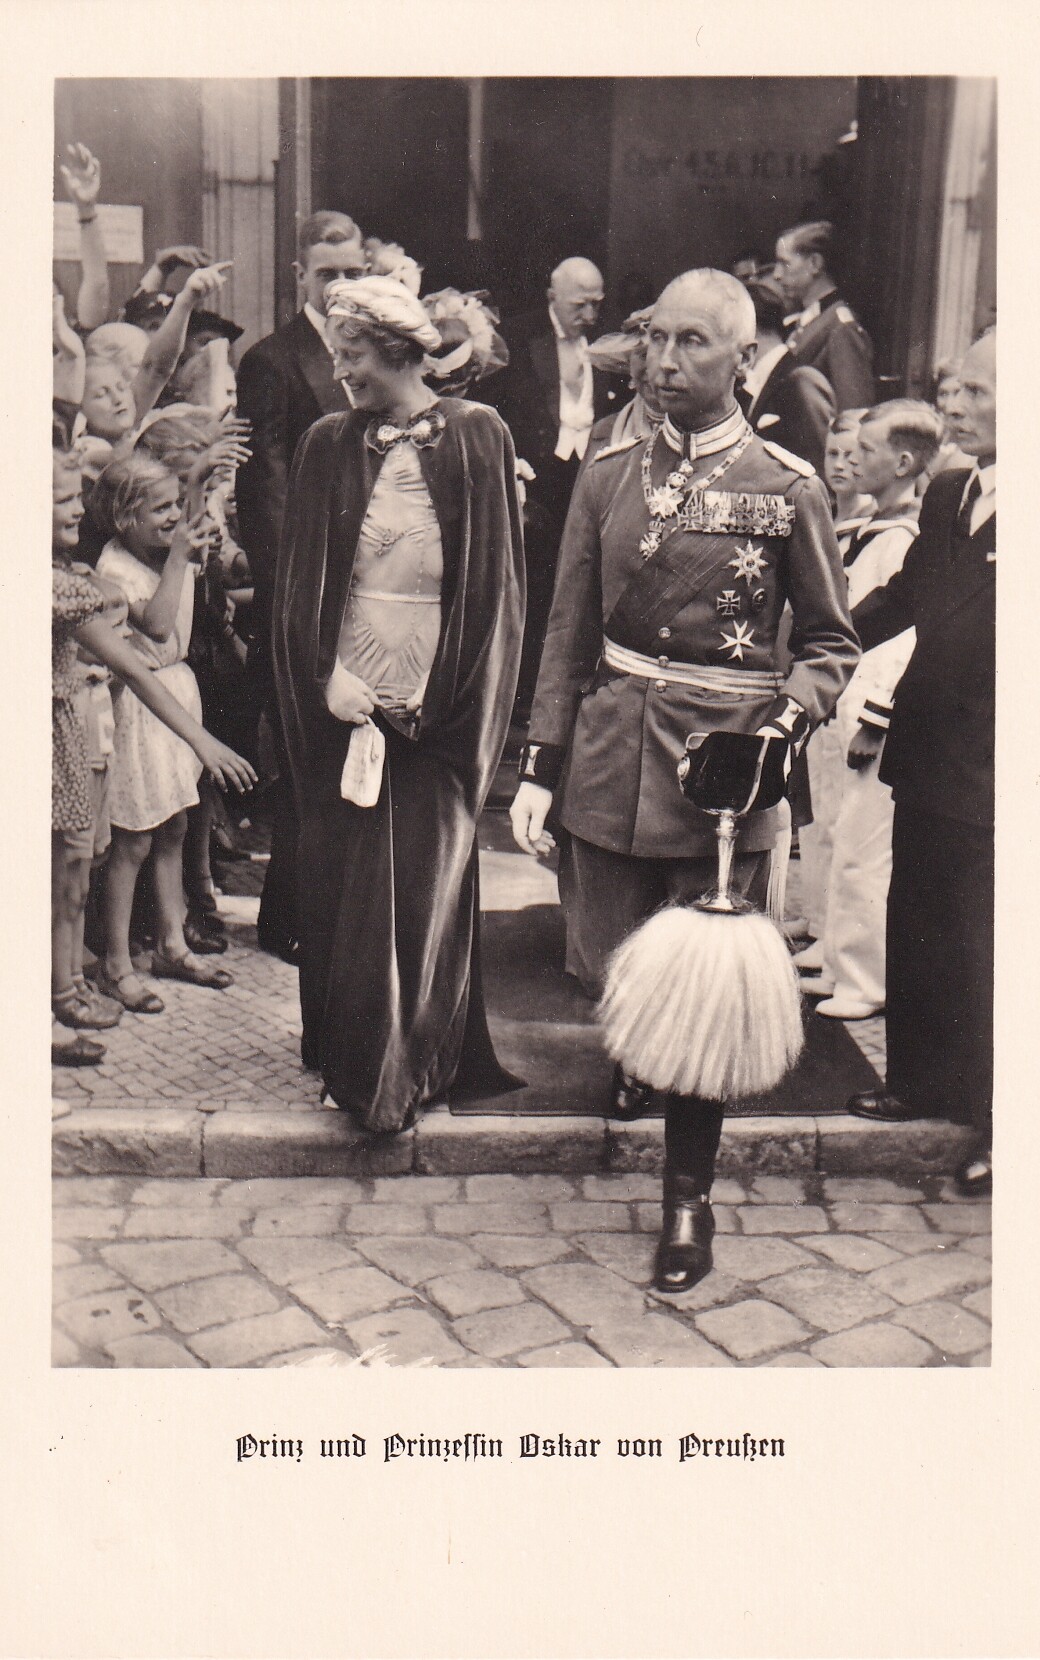 Bildpostkarte mit Foto des Oskar Prinz von Preußen mit Frau bei der Hochzeit ihrer Tochter, 1938 (Schloß Wernigerode GmbH RR-F)